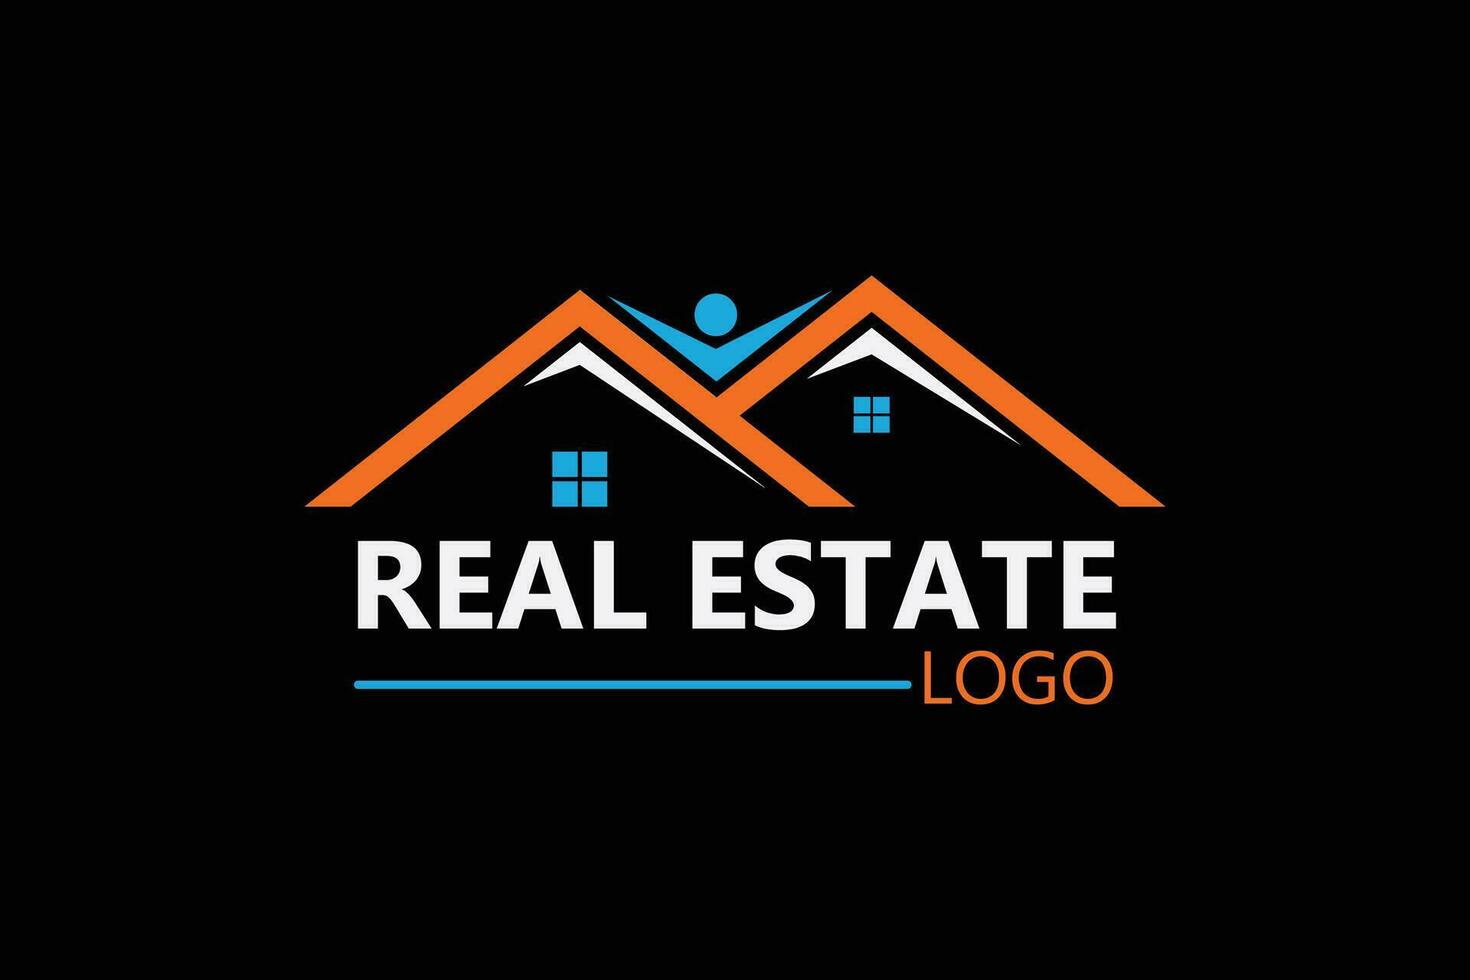 Real-Estate Logo Design Vector Template, Elegant Home Staging Service Logo